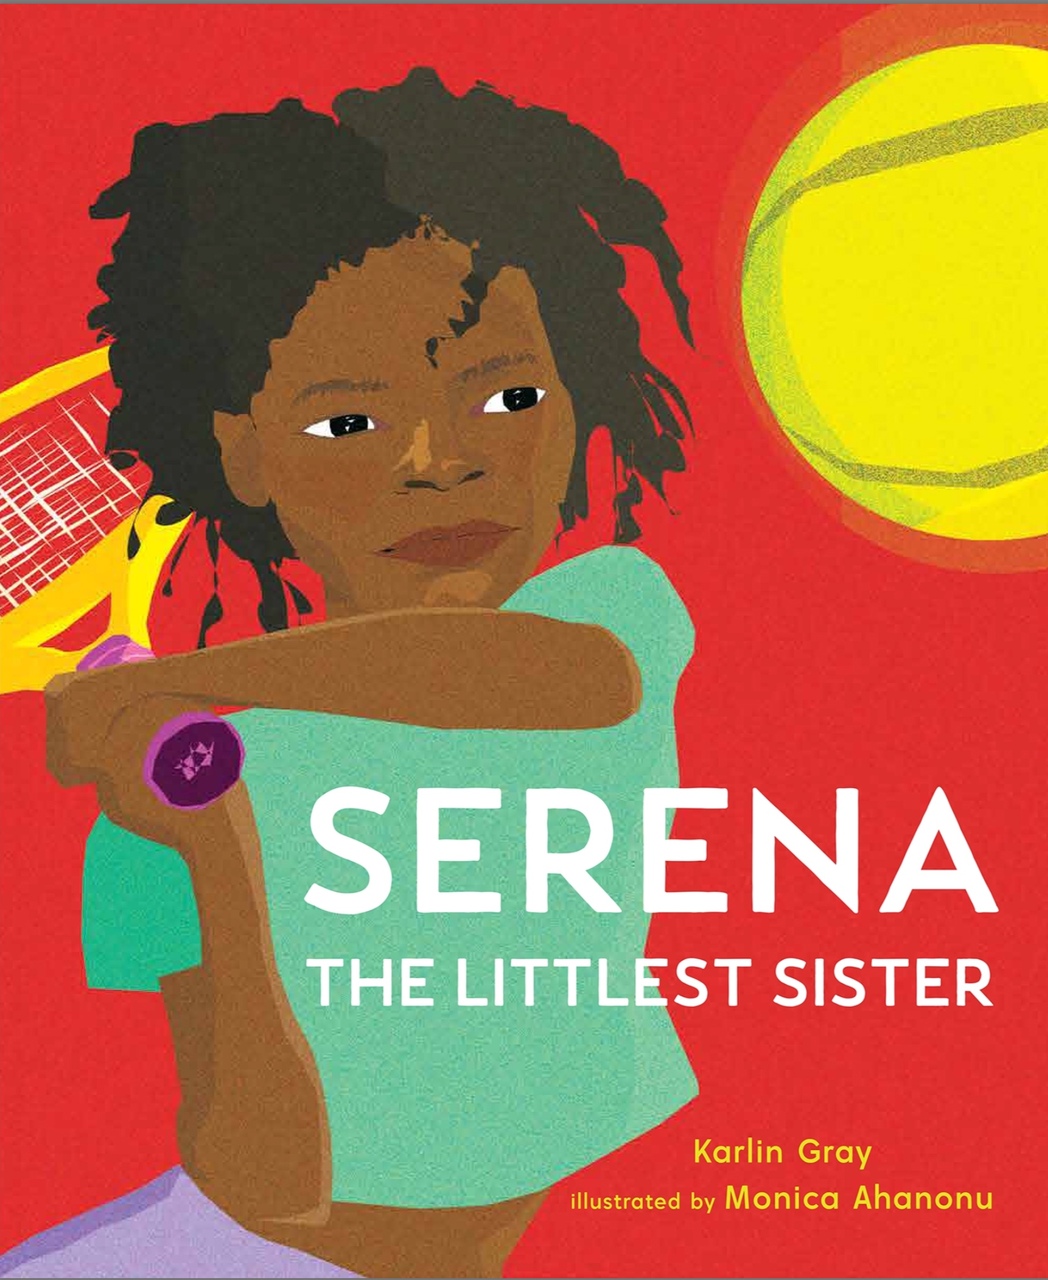 Serena: The Littlest Sister